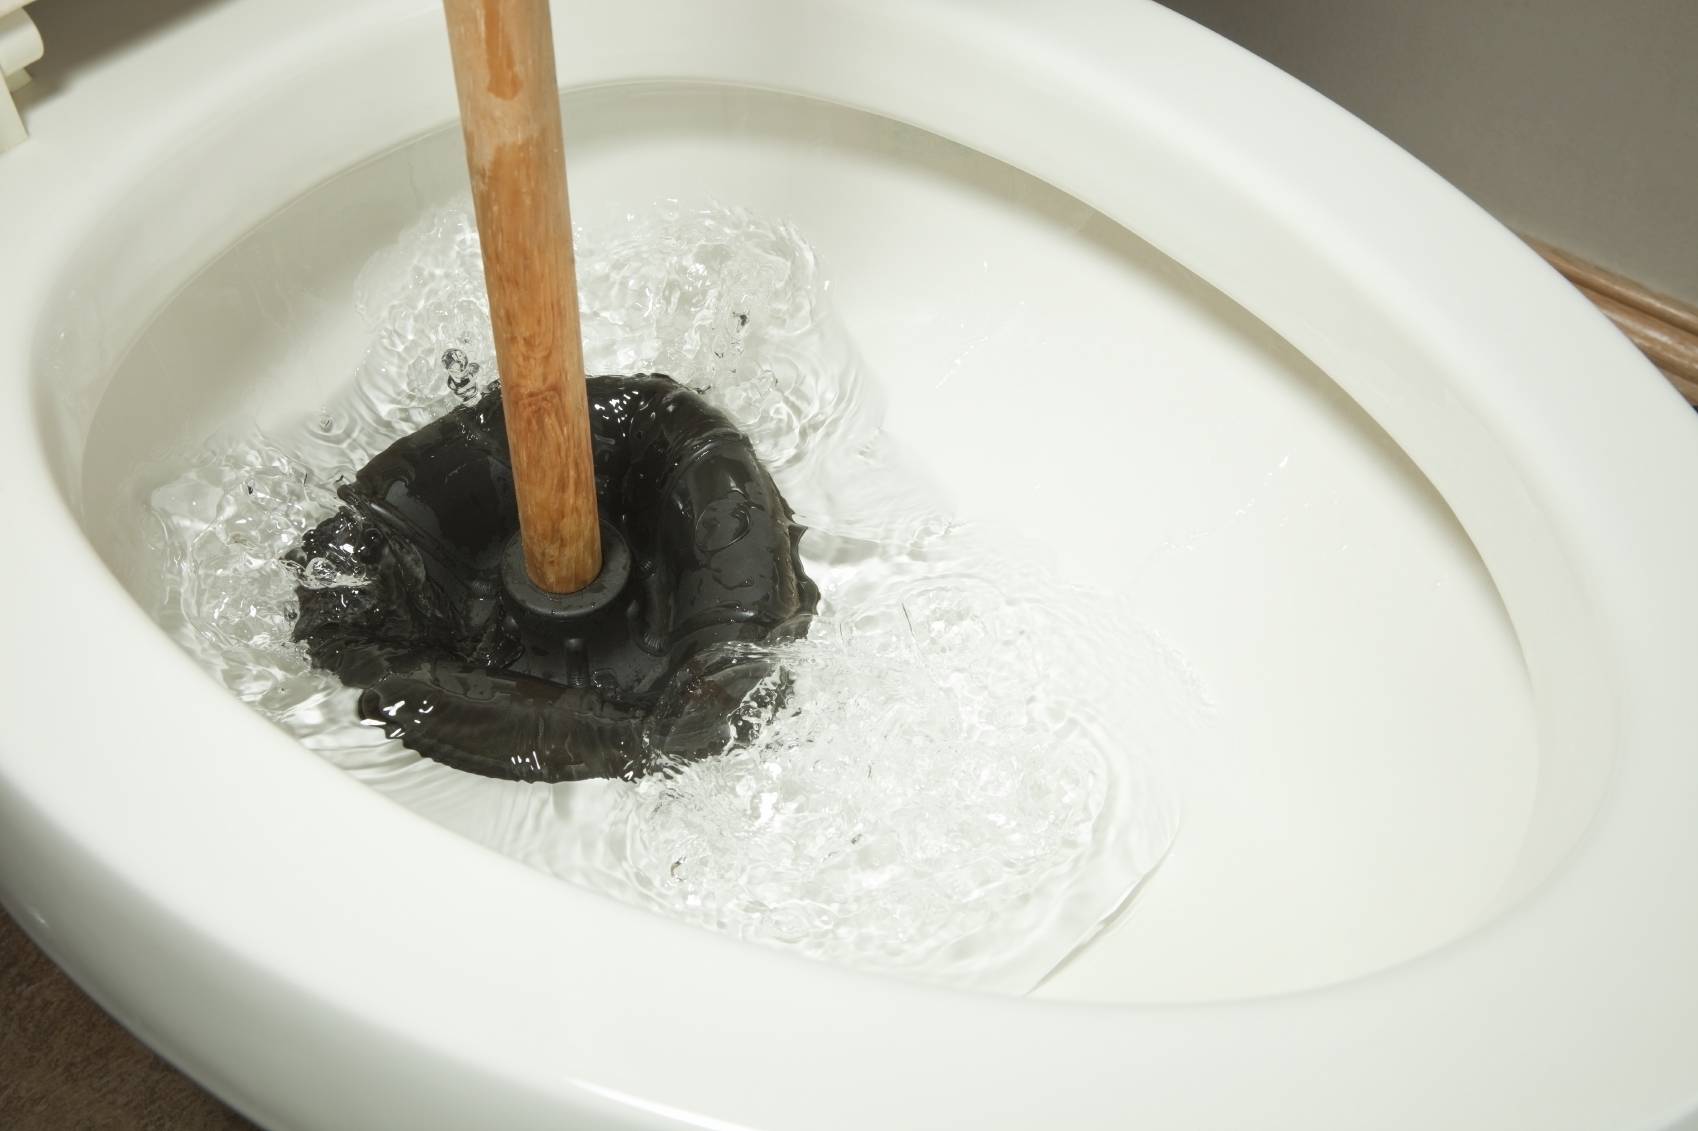 Что делать если засорился унитаз: эффективные способы устранения засора в туалете